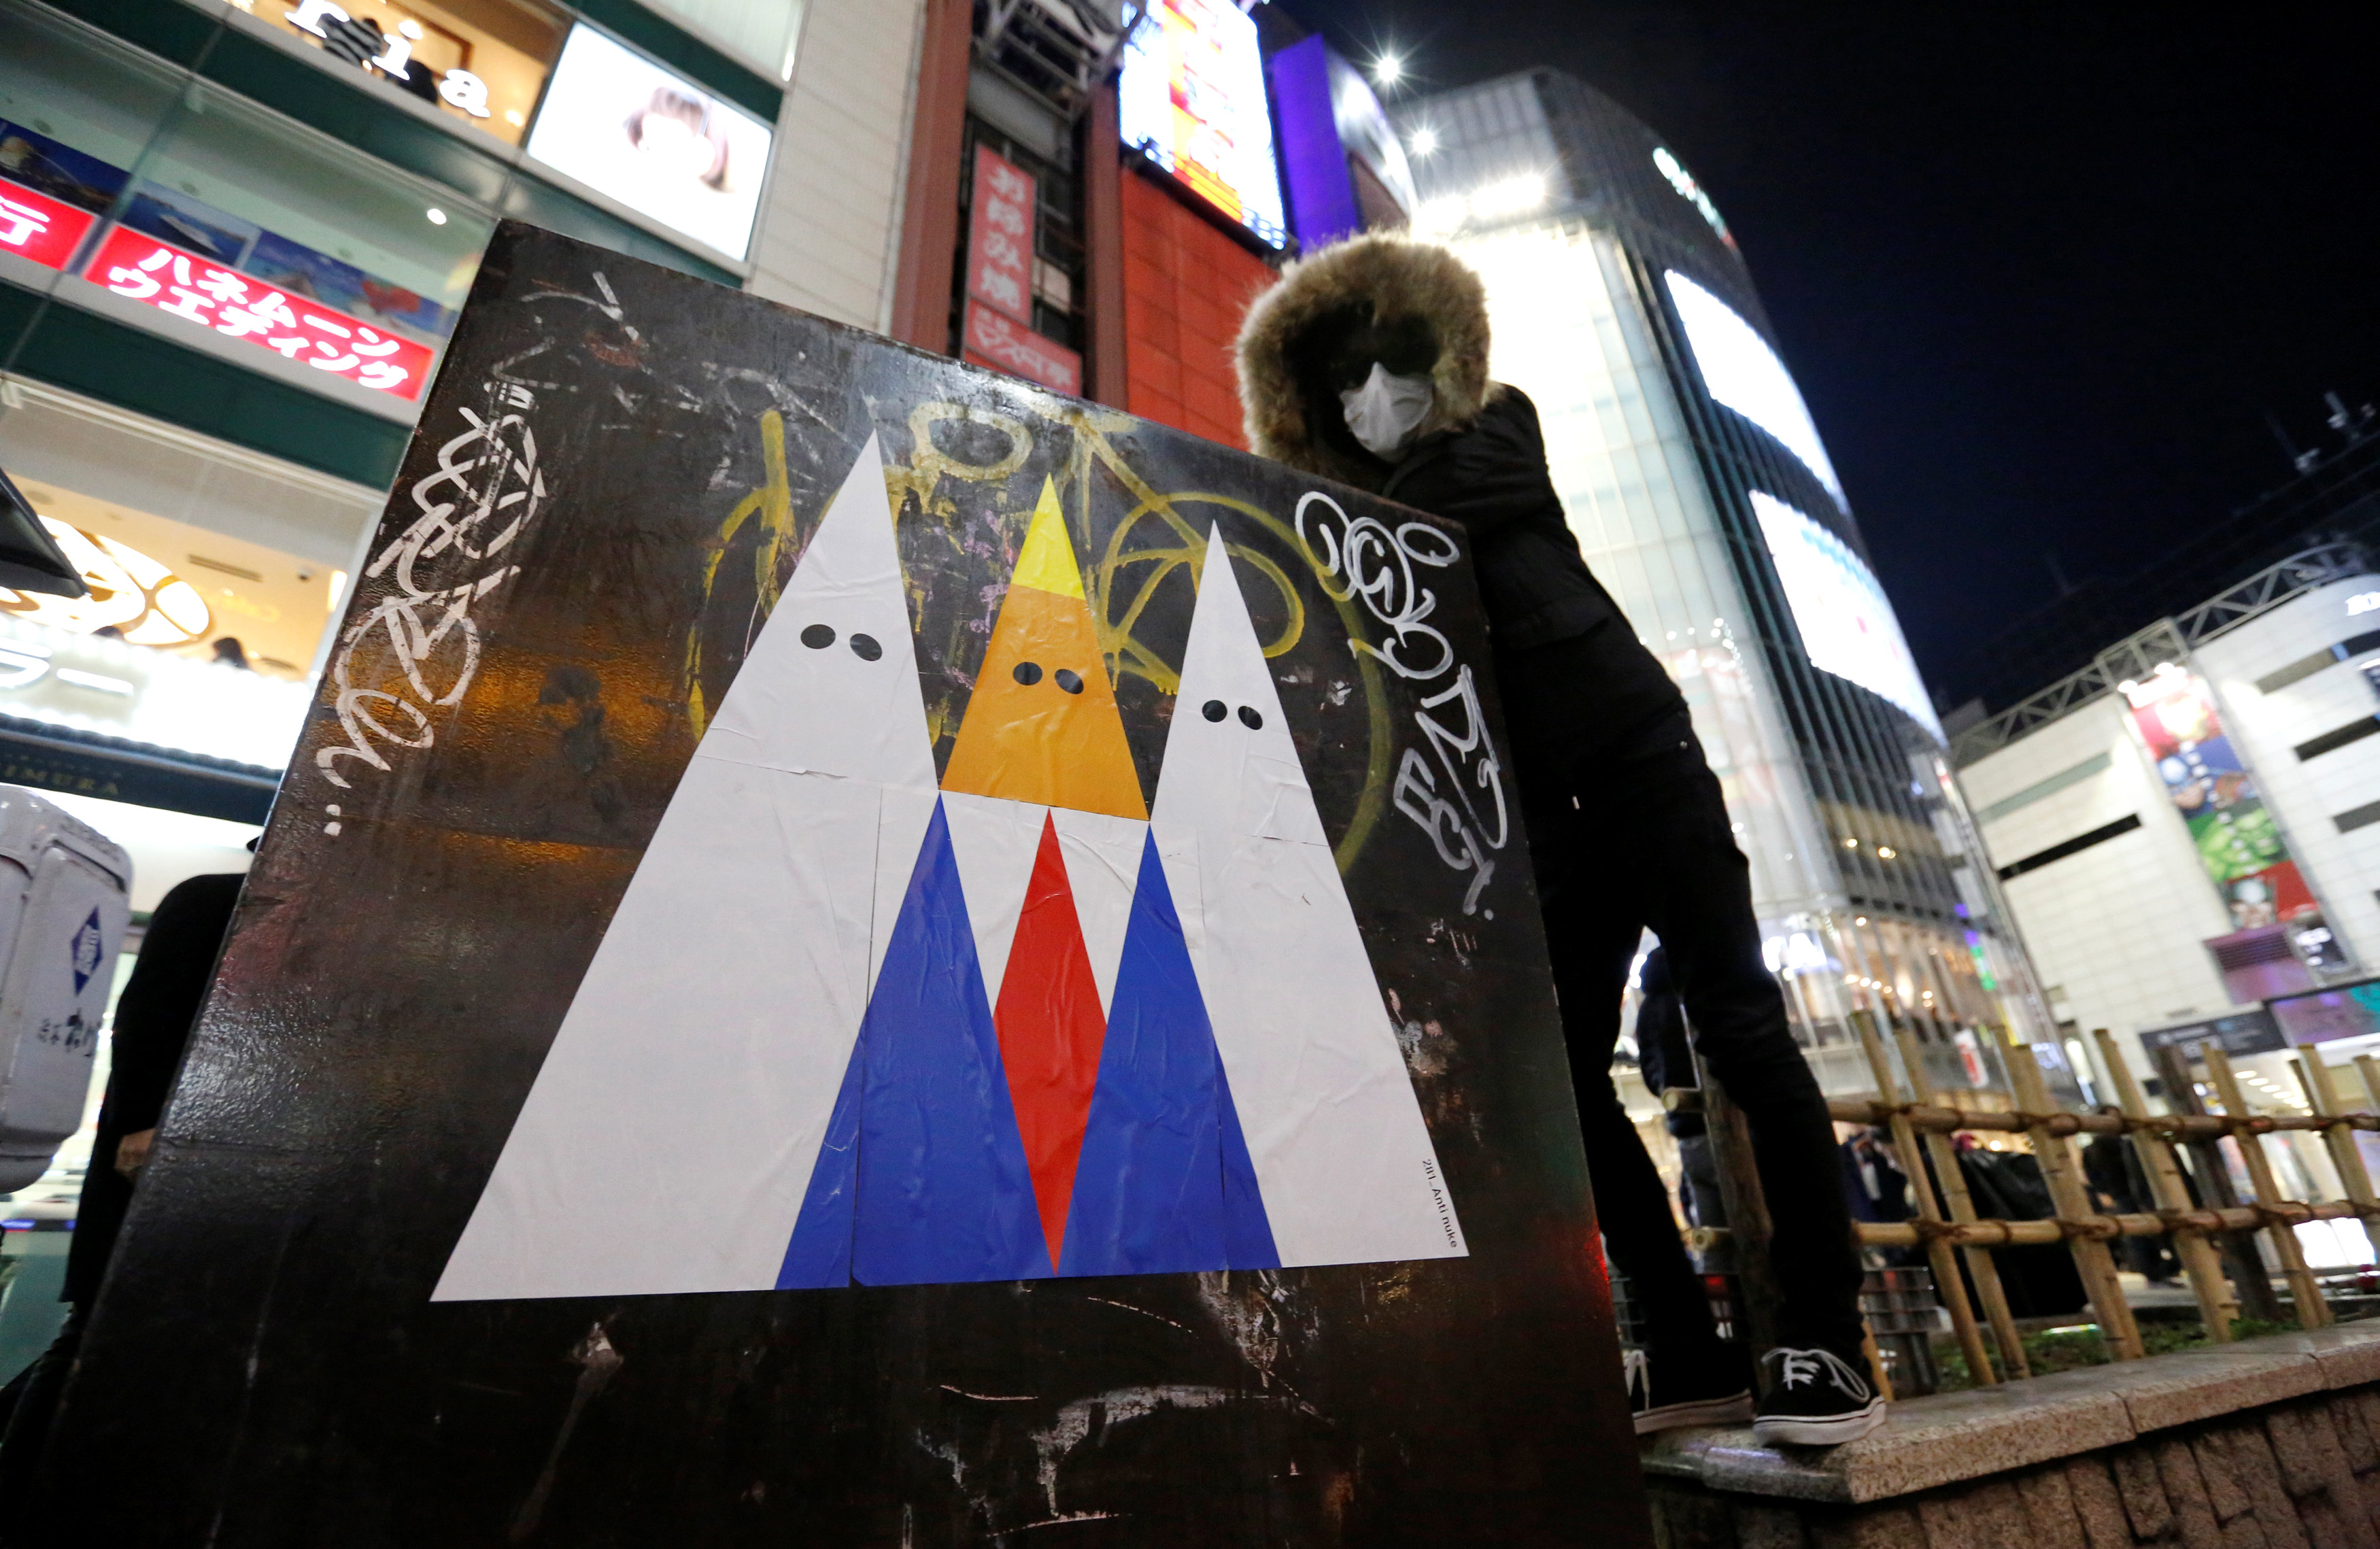 الفنان اليابانى 281 أنتينيوك بجوار الجرافيتى المنتقد لدونالد ترامب